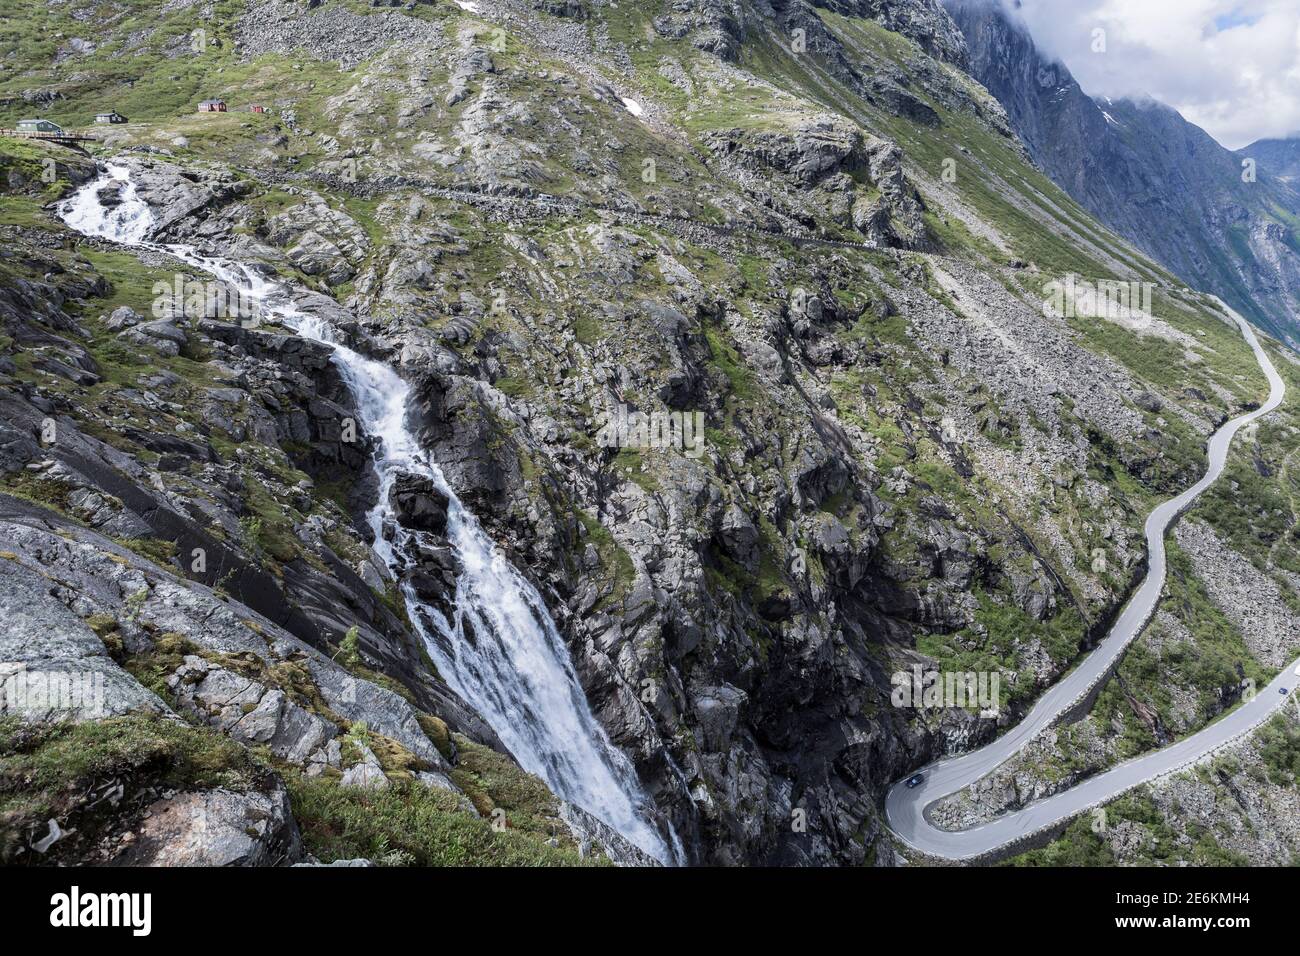 Stigfossen waterfall at Trollstigen mountain pass in Norway Stock Photo